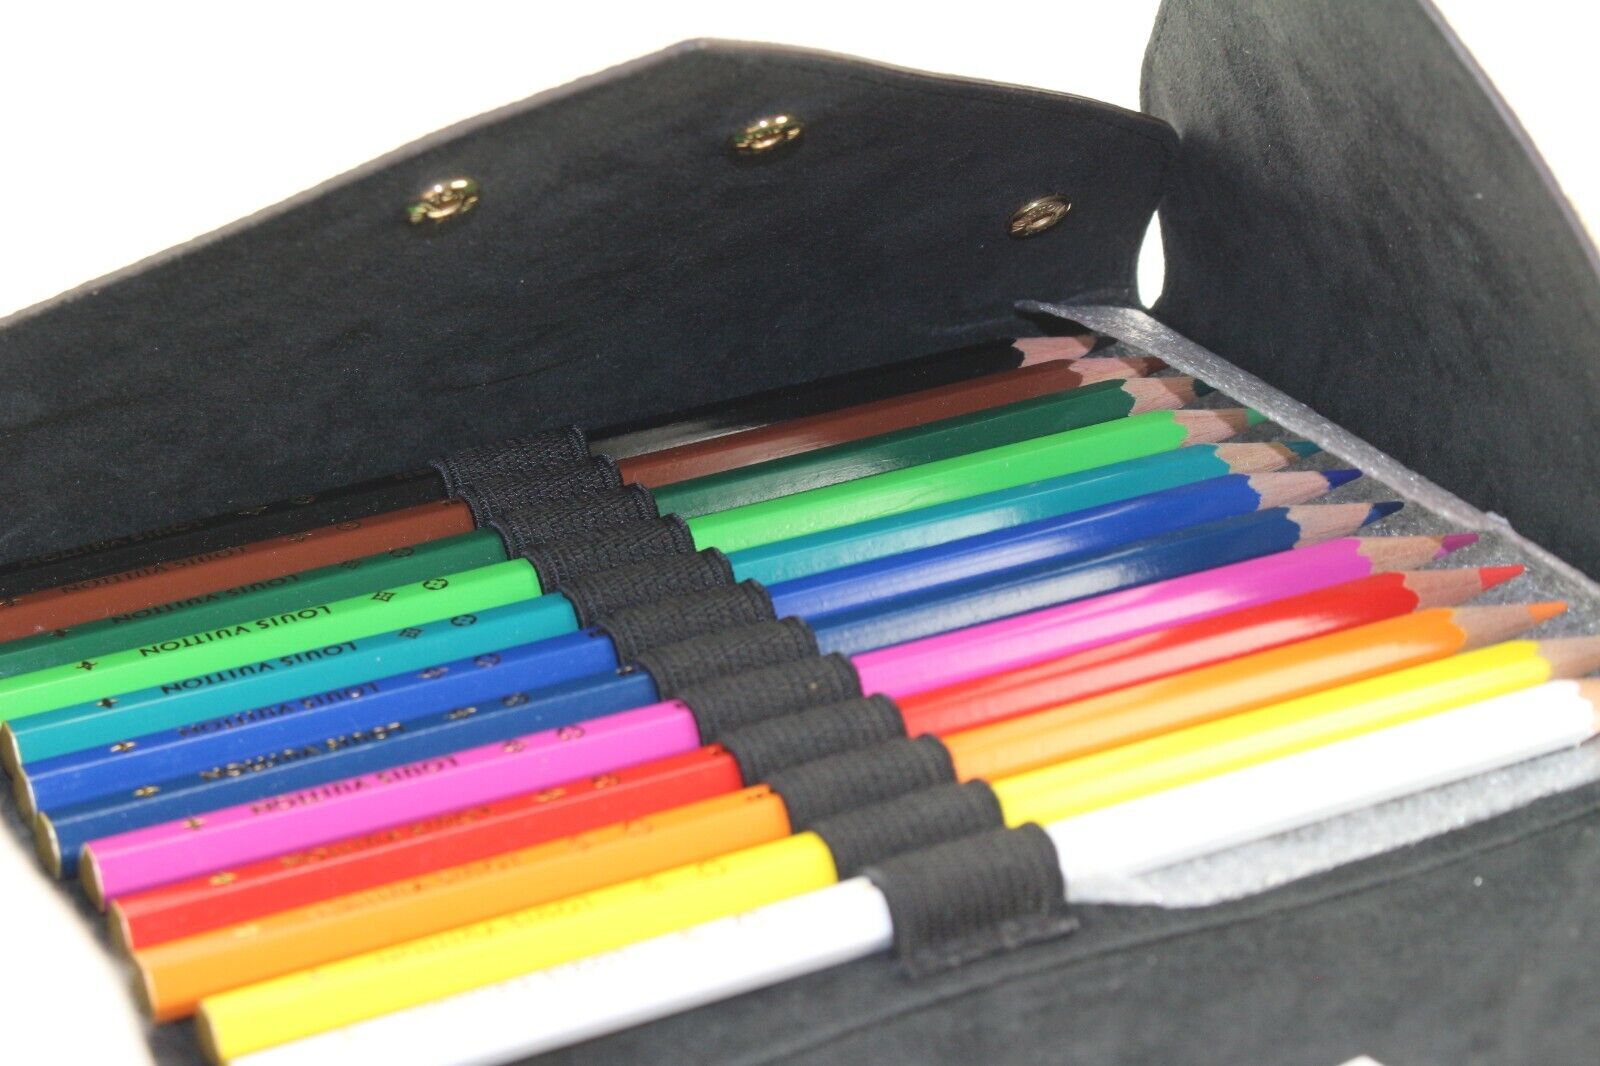 Louis Vuitton Colored Pencil Pouch